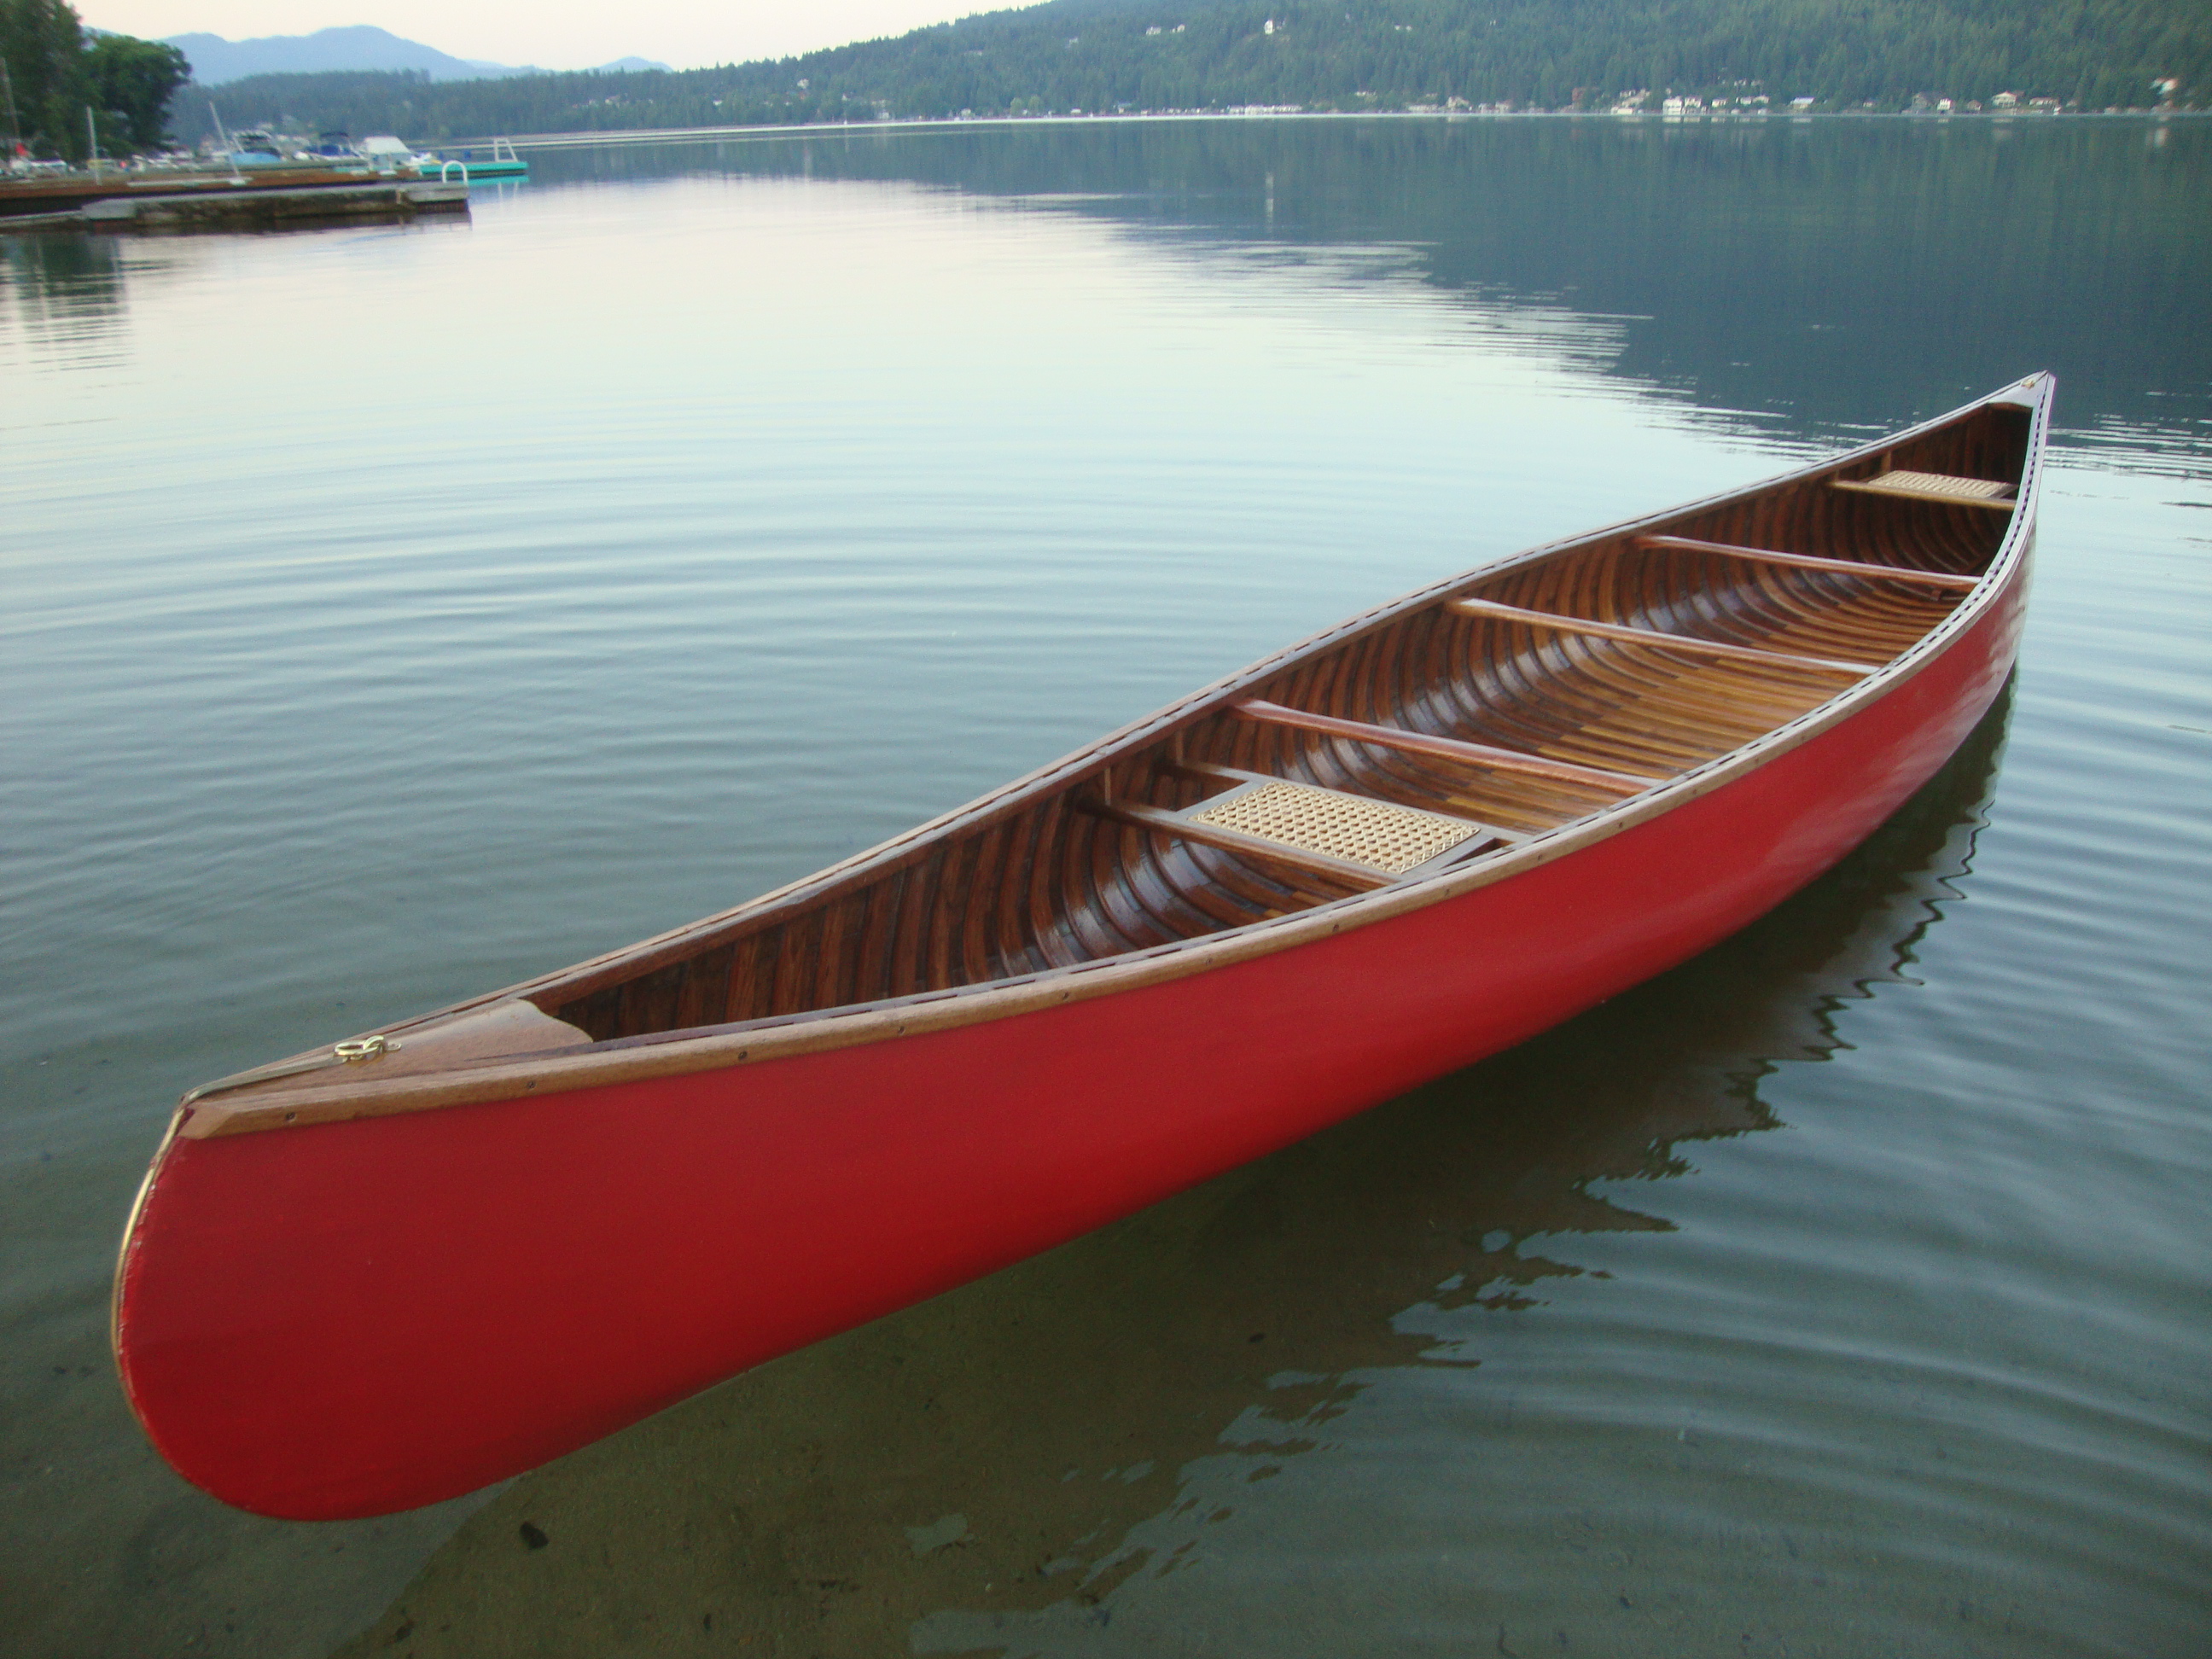 Greenwood canoes | Canoeguy's Blog